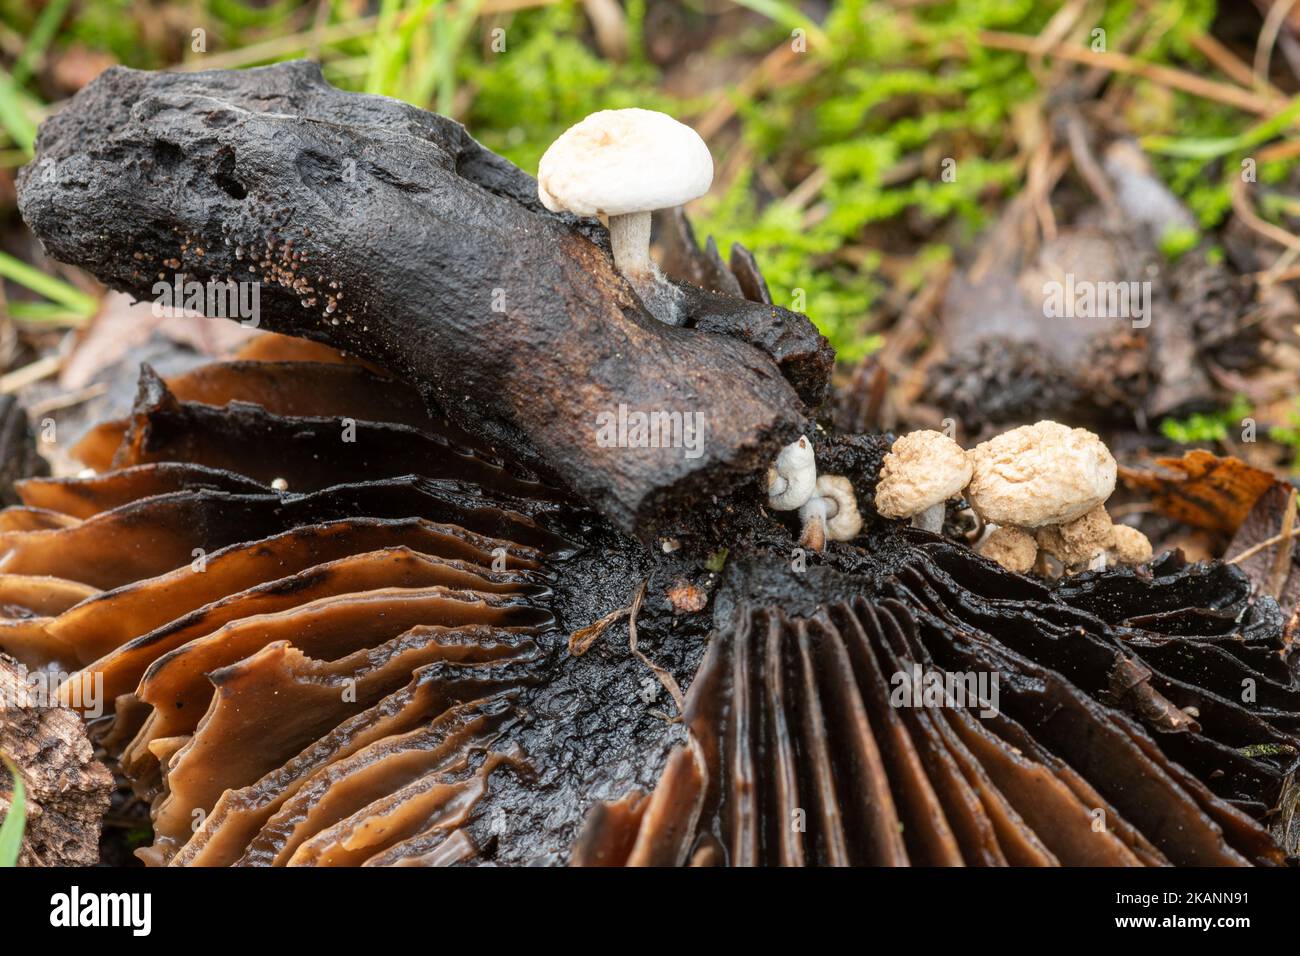 Powdery piggyback fungi or toadstools (Asterophora lycoperdoides) growing on a blackened decaying mushroom during late autumn, Surrey, UK Stock Photo